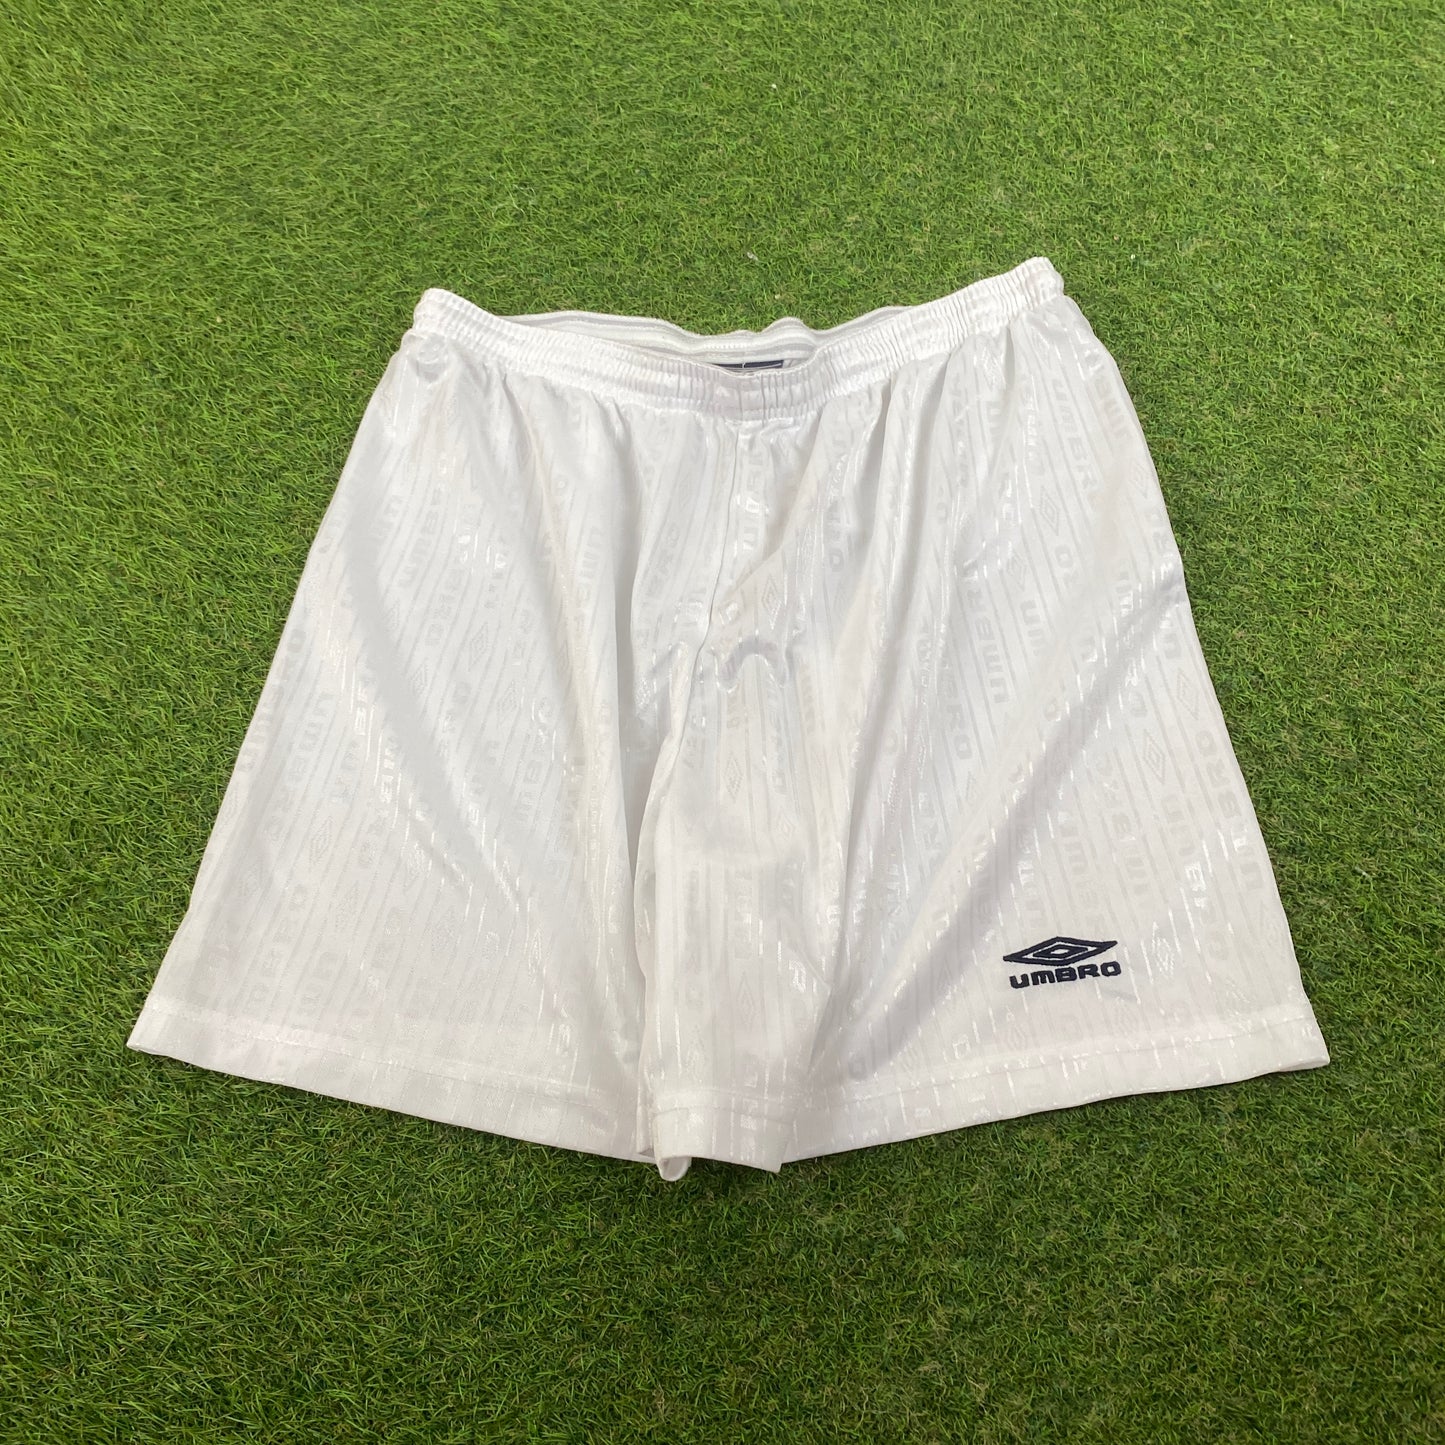 Retro Umbro Football Shorts White XL